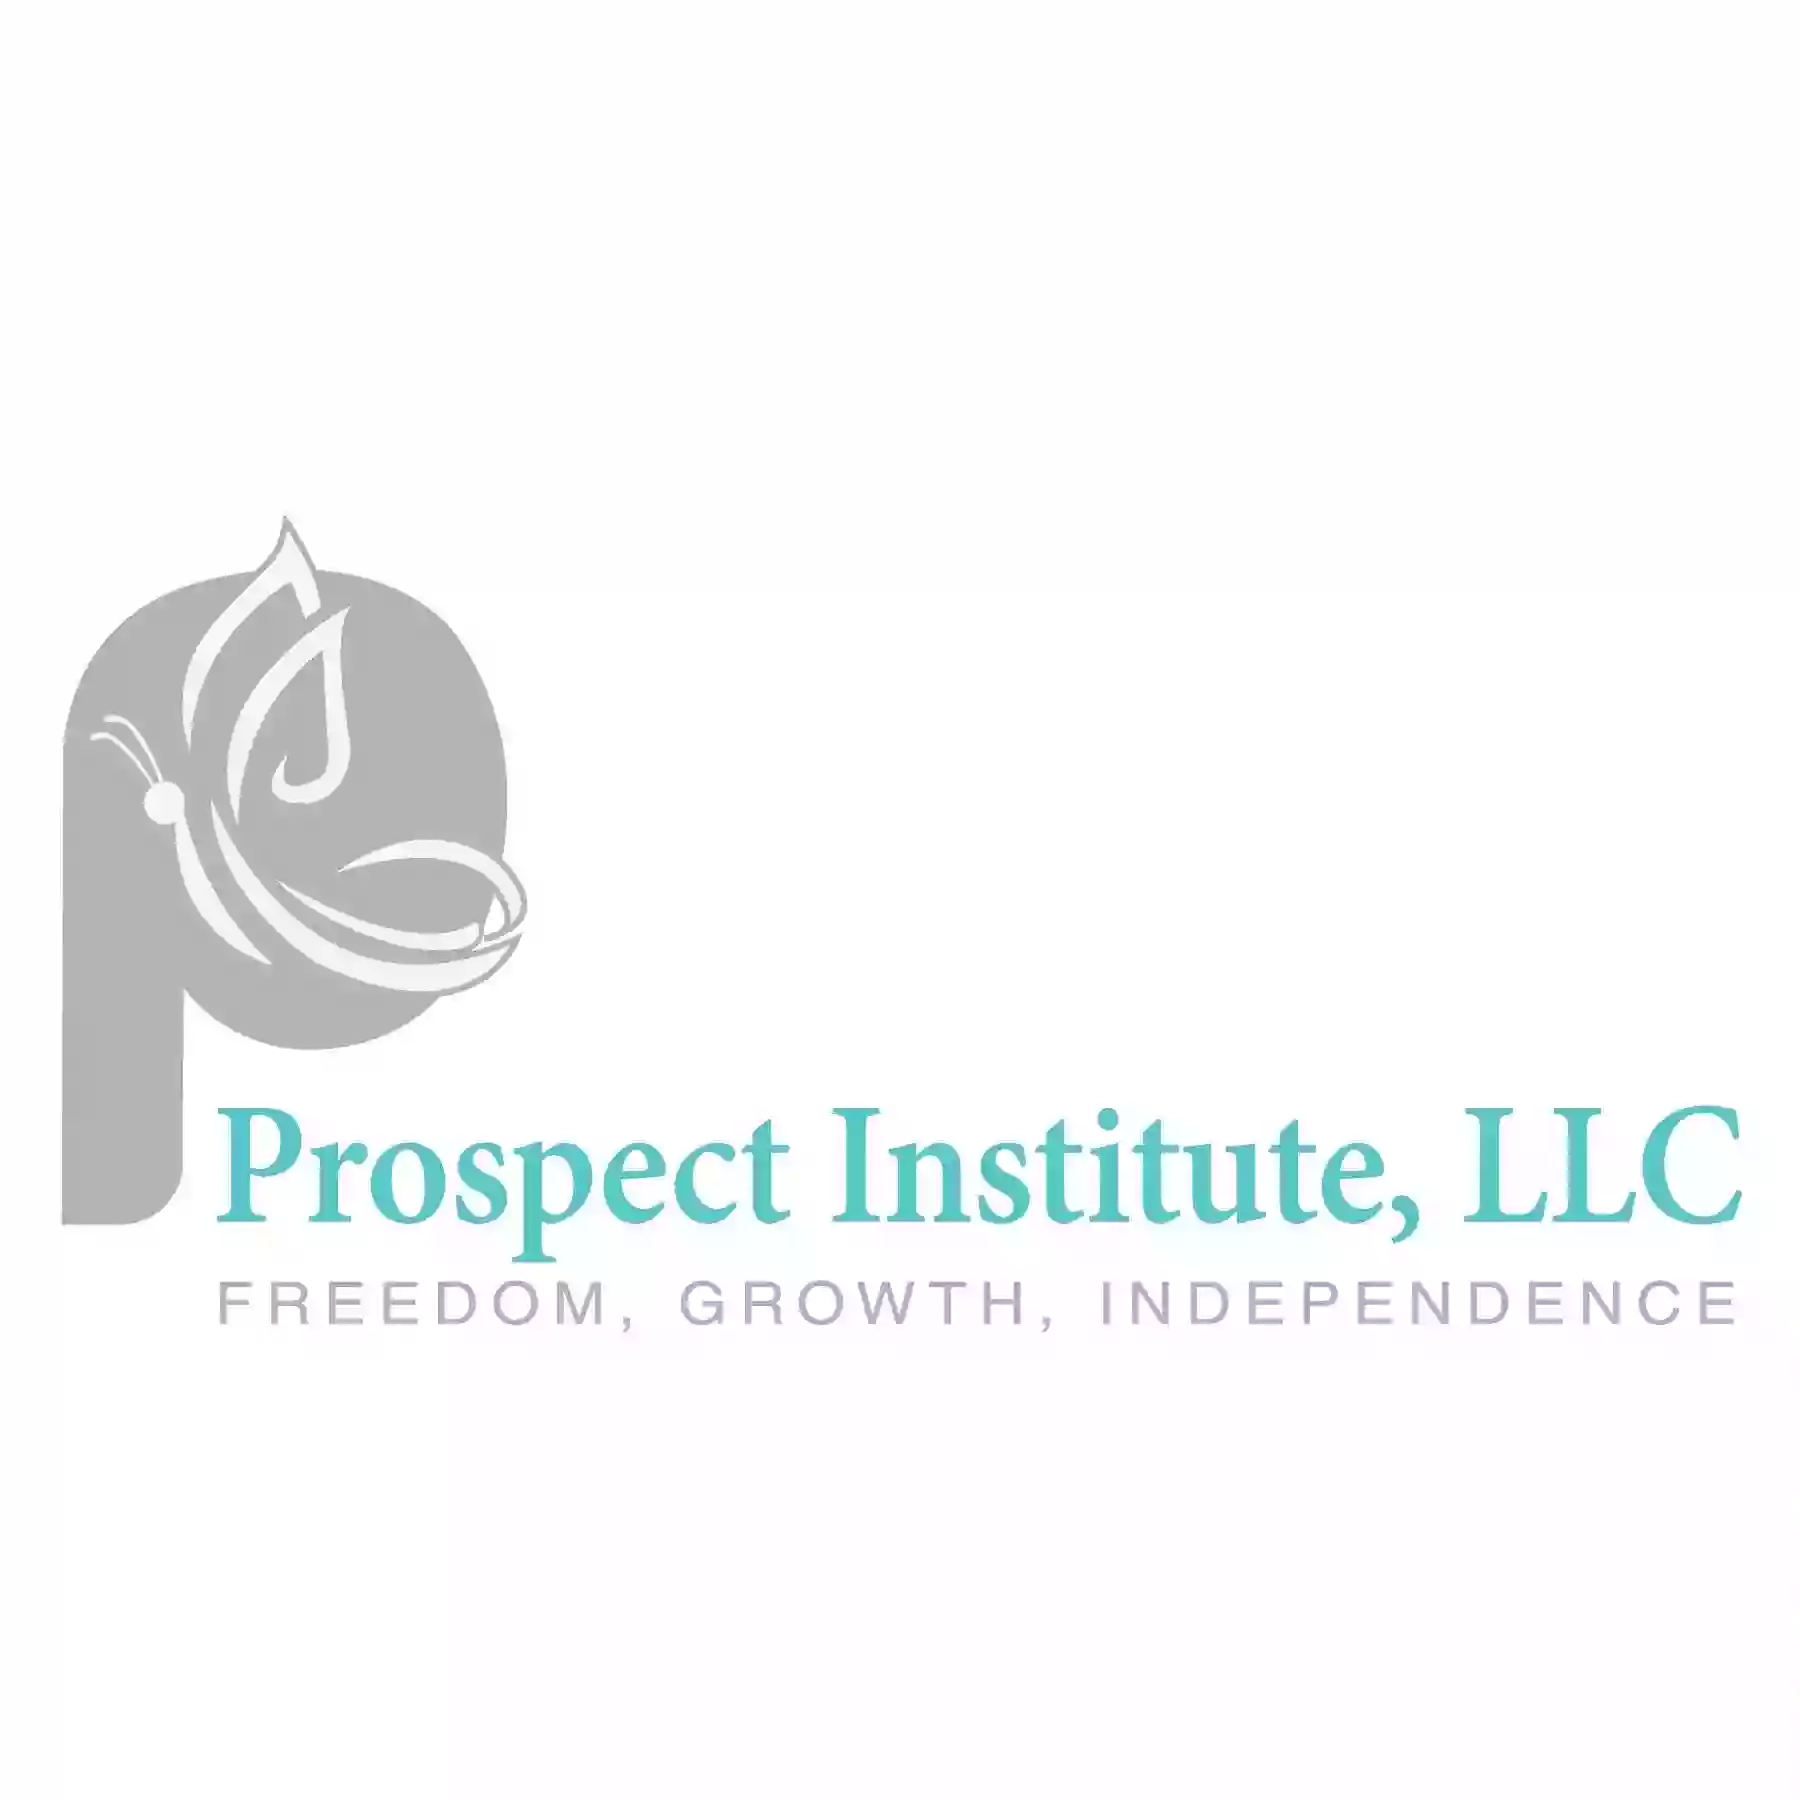 Prospect Institute, LLC